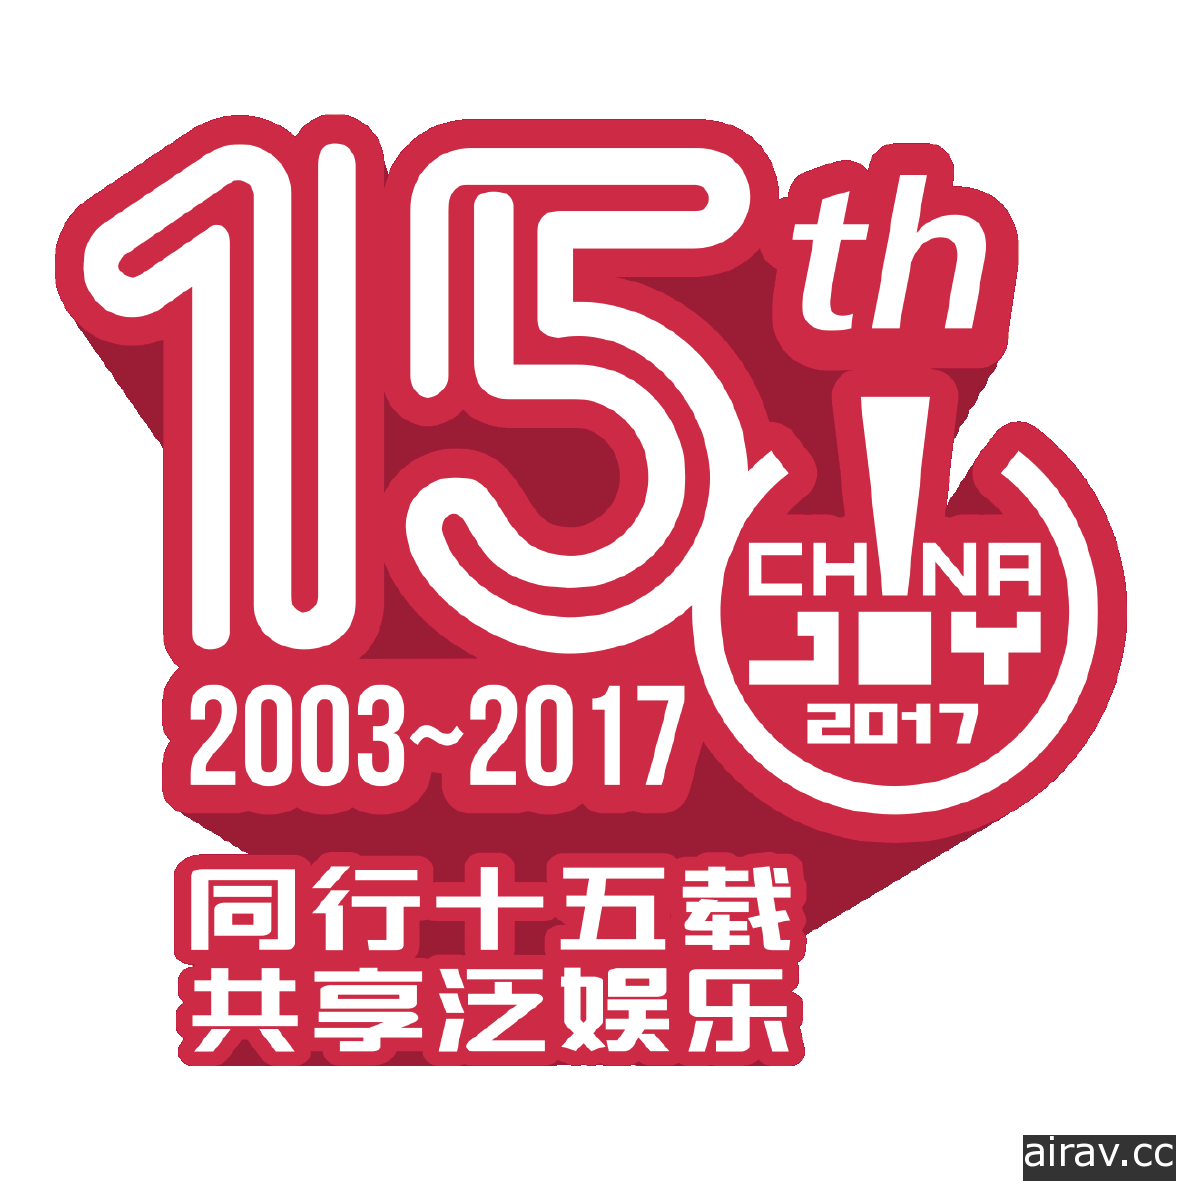 【CJ 17】中國最大綜合泛娛樂展覽 ChinaJoy 邁入第 15 屆  7 月 27 日至 30 日於上海舉辦